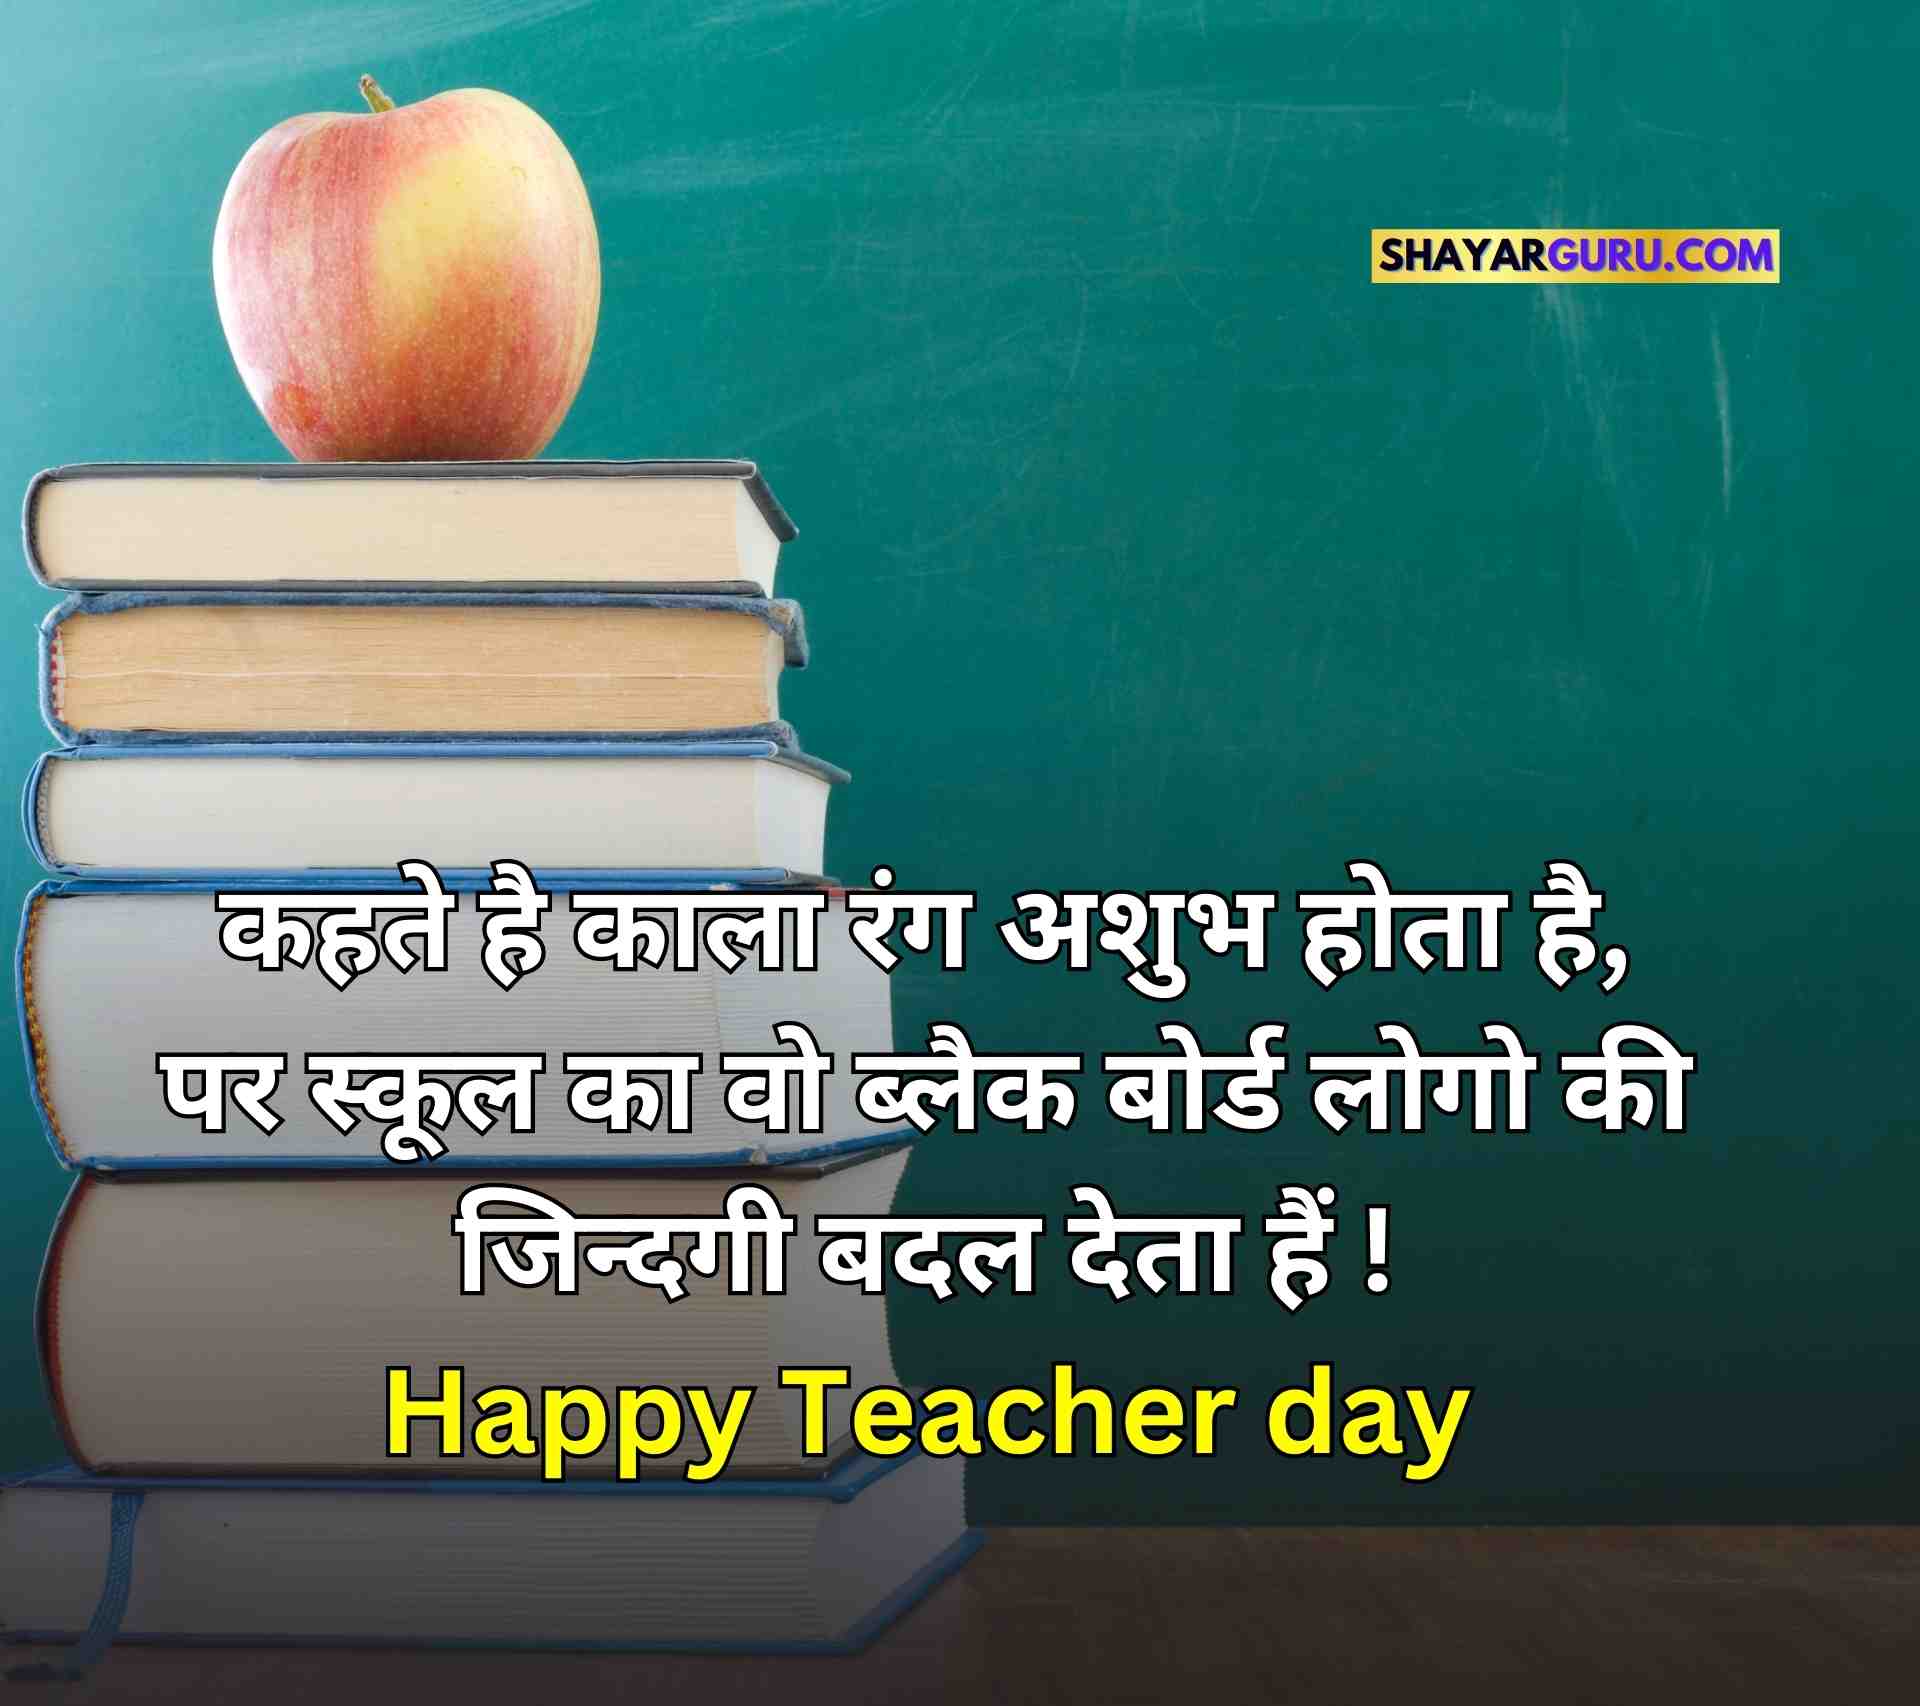 Happy Teachers Day Quotes Image